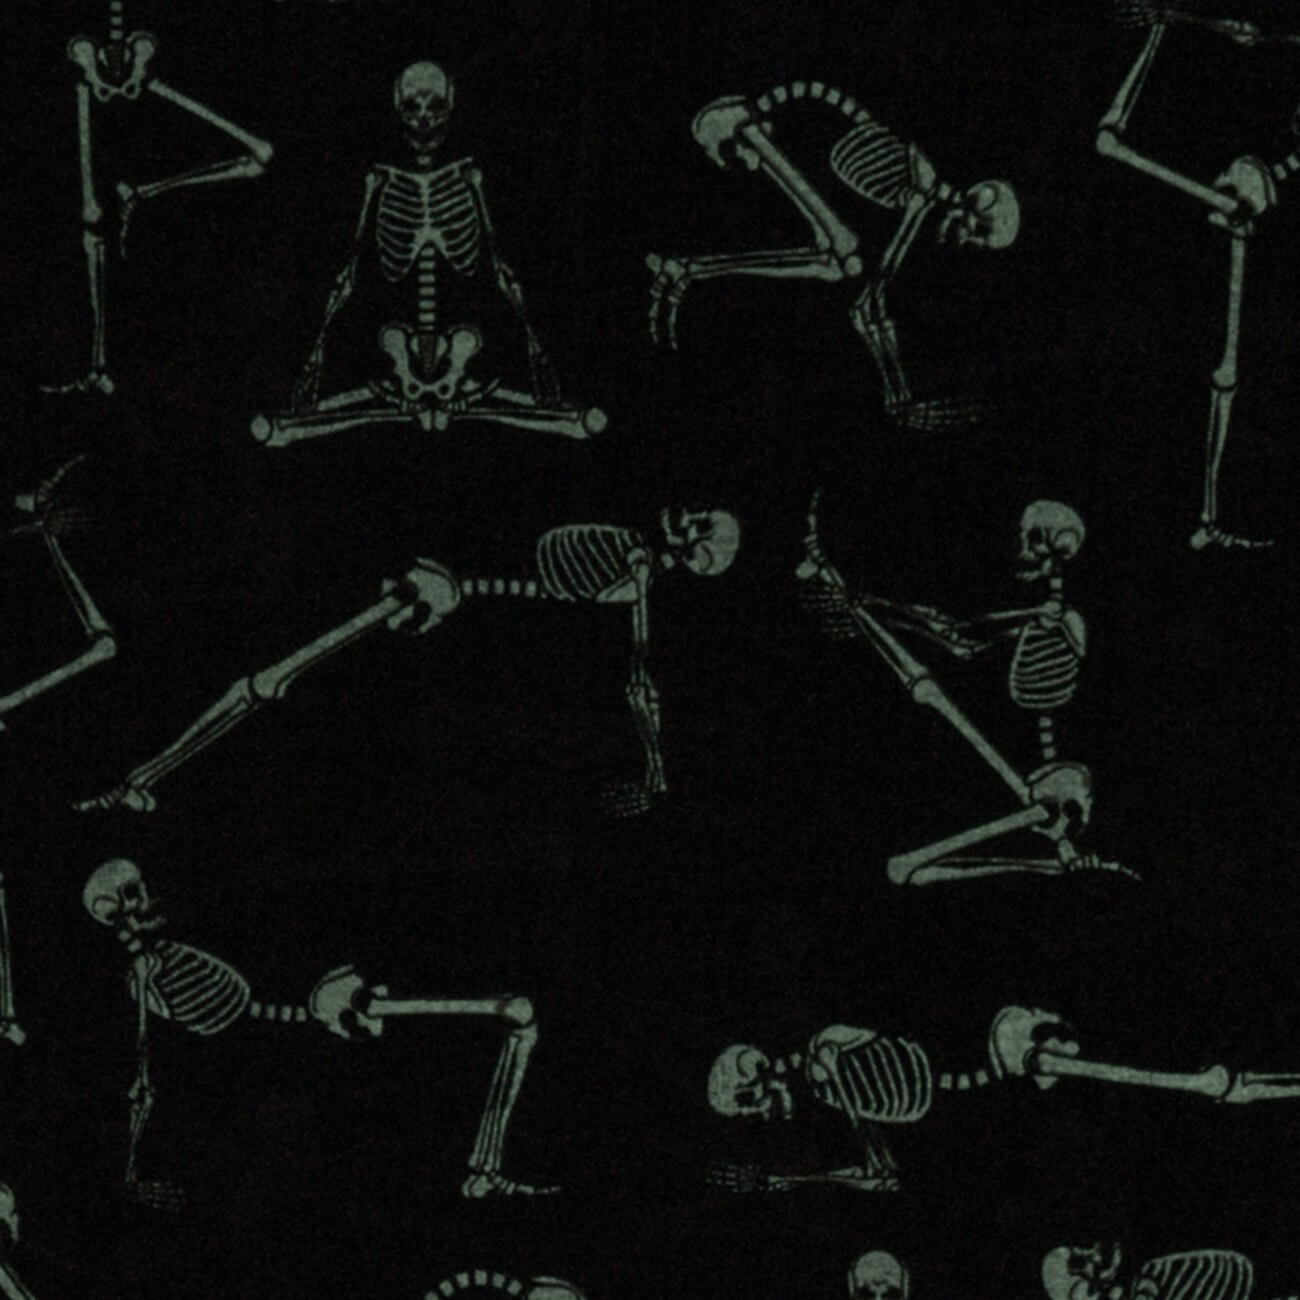 Quiltzauberei.de | Schwarzer Yogastoff mit Skeletten - GLOW IN THE DARK  Lights Out Skeletons Motivstoff - Robert Kaufmann Halloweenstoffserie |  Quiltzauberei.de ♥ Jetzt günstig kaufen! | Hoodies